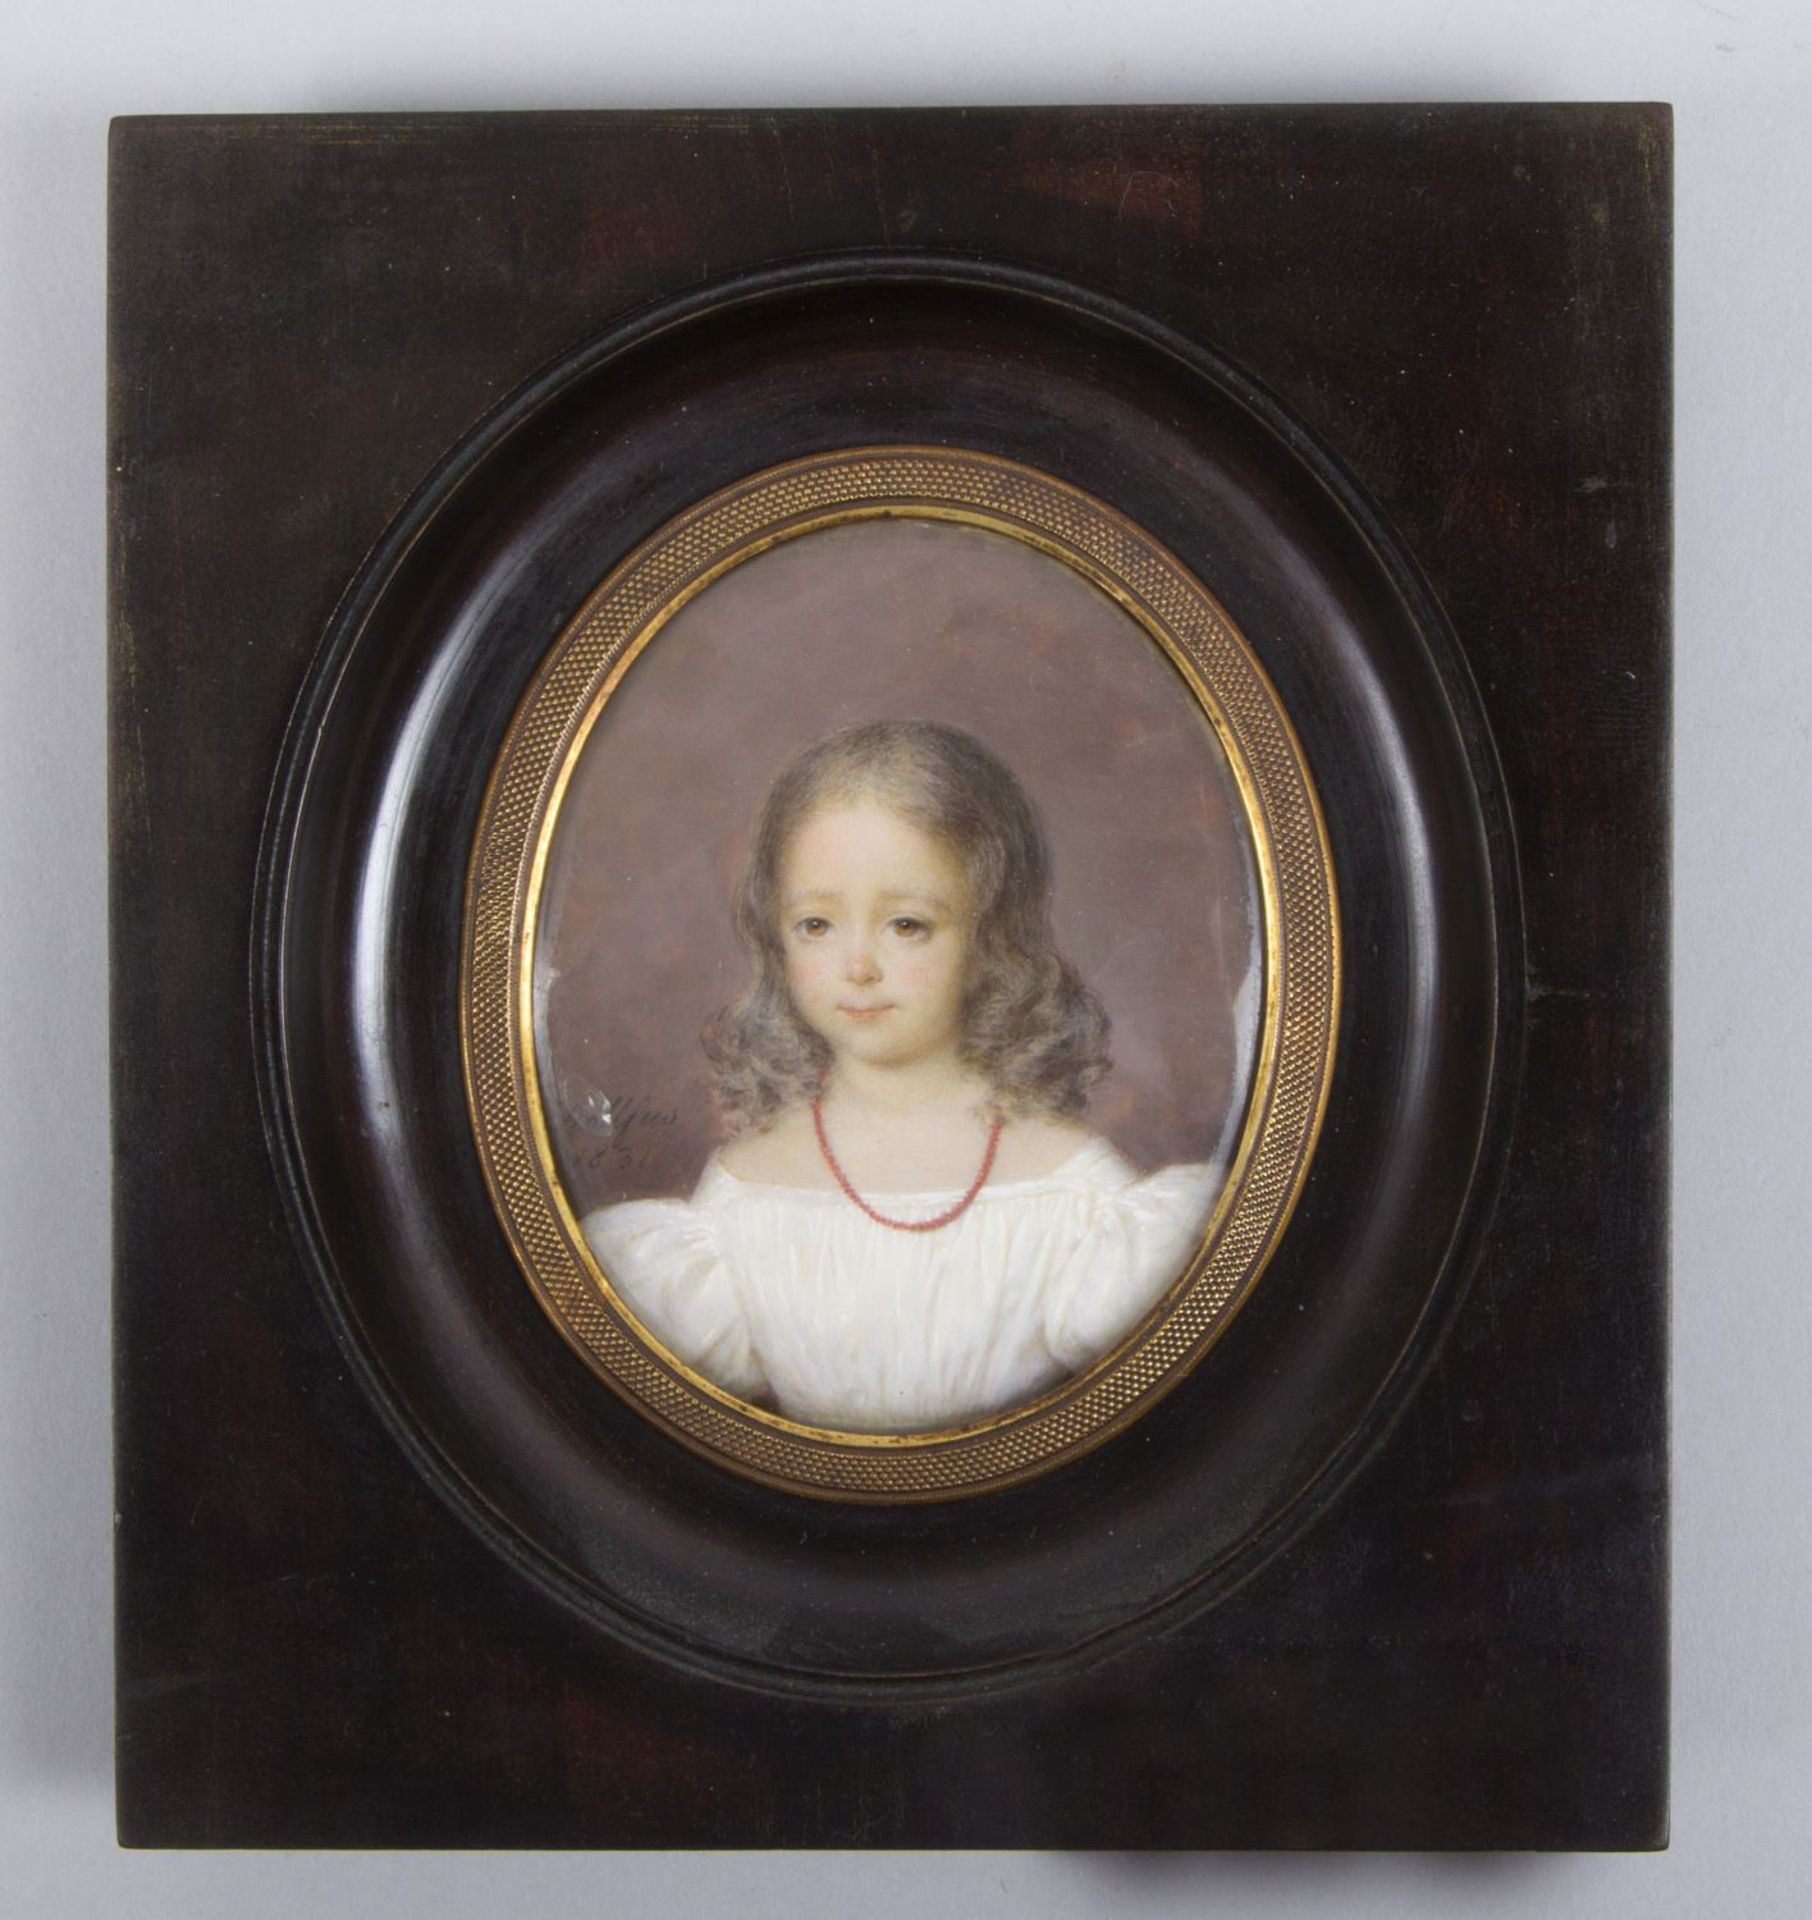 Dollfus Portrait eines Mädchens. Miniaturmalerei. Sign. und dat. 1831. 7 x 6 cm.